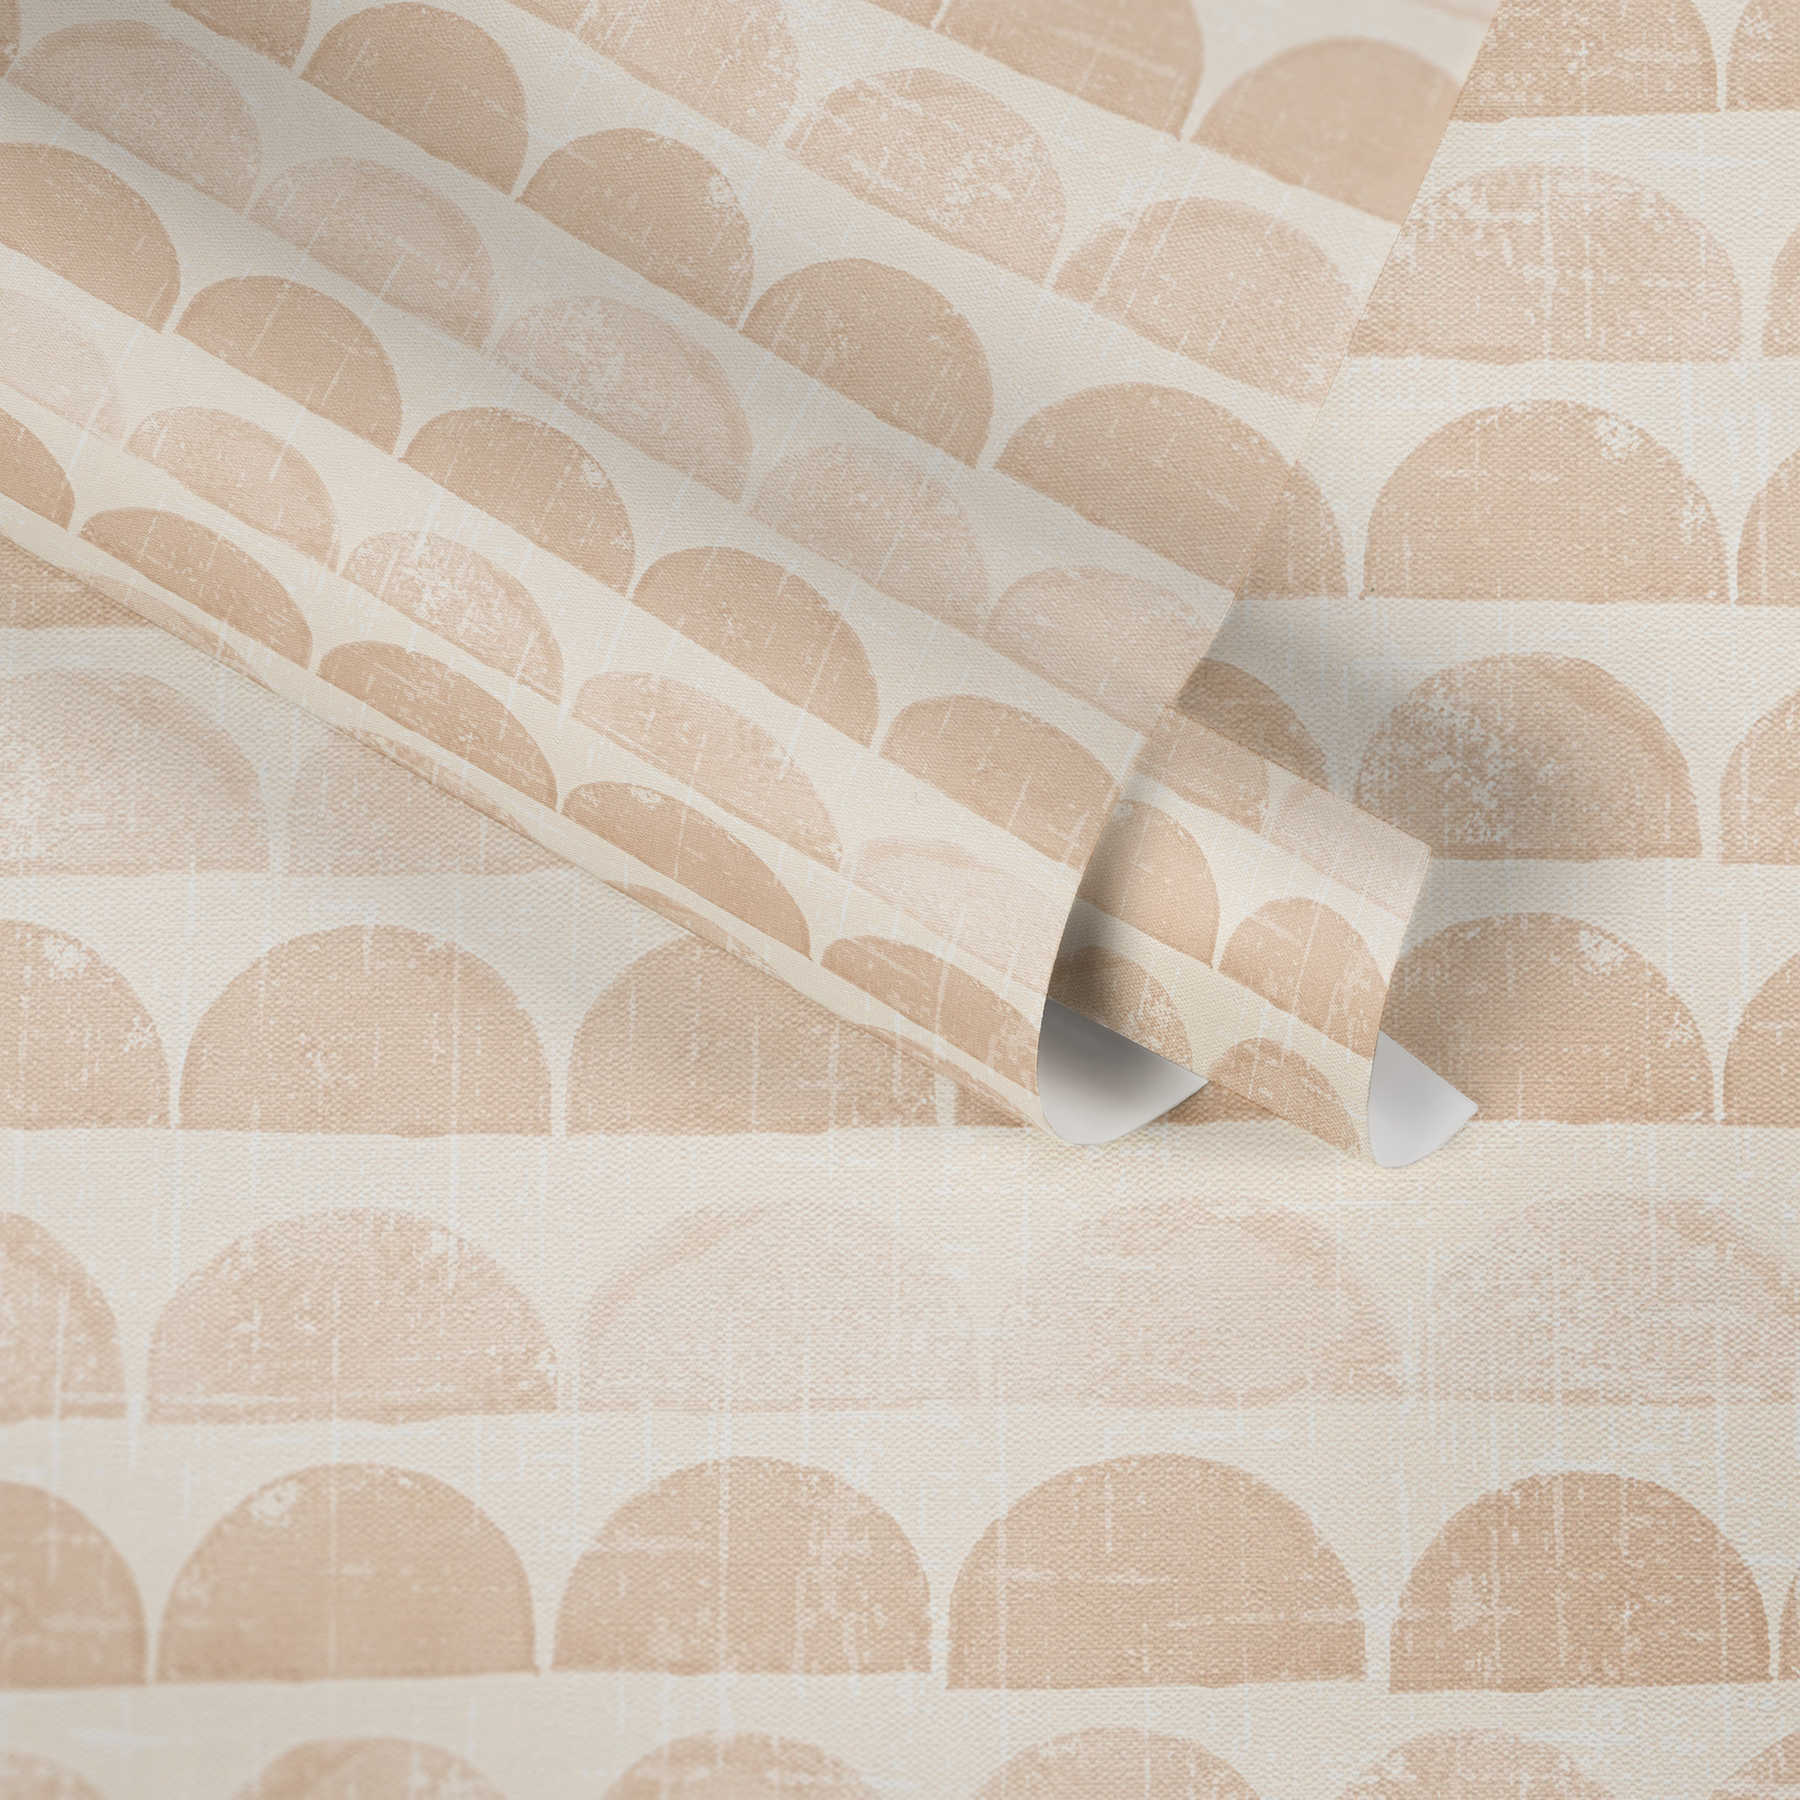             Scandinavisch design behang met halve cirkel patroon - beige, crème
        